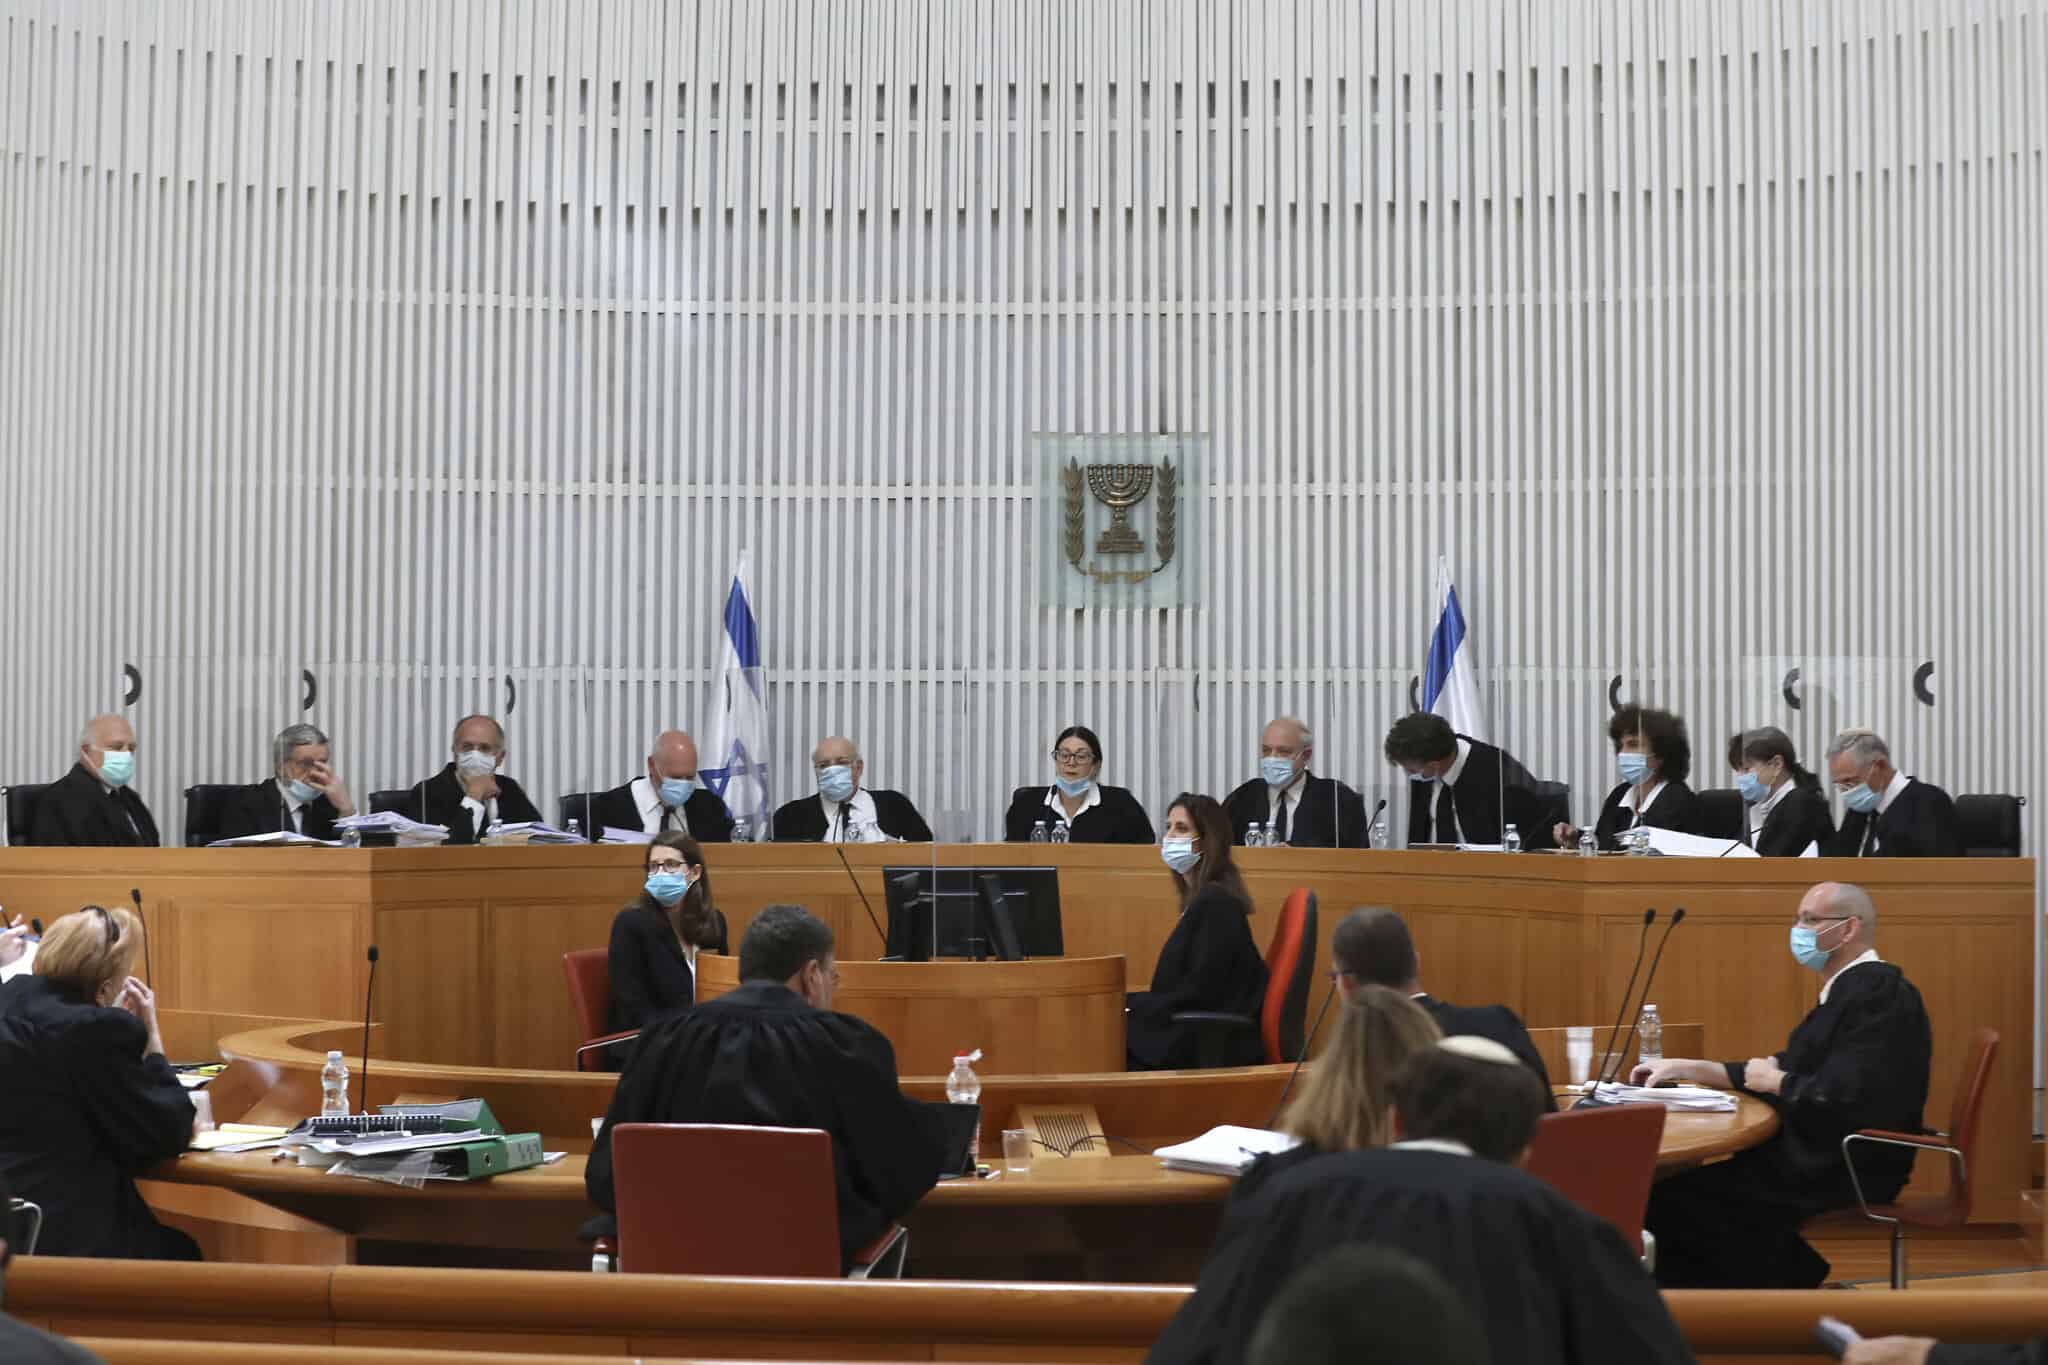 בית המשפט העליון בירושלים ב-4 במאי 2020 (צילום: Abir Sultan/Pool via AP)